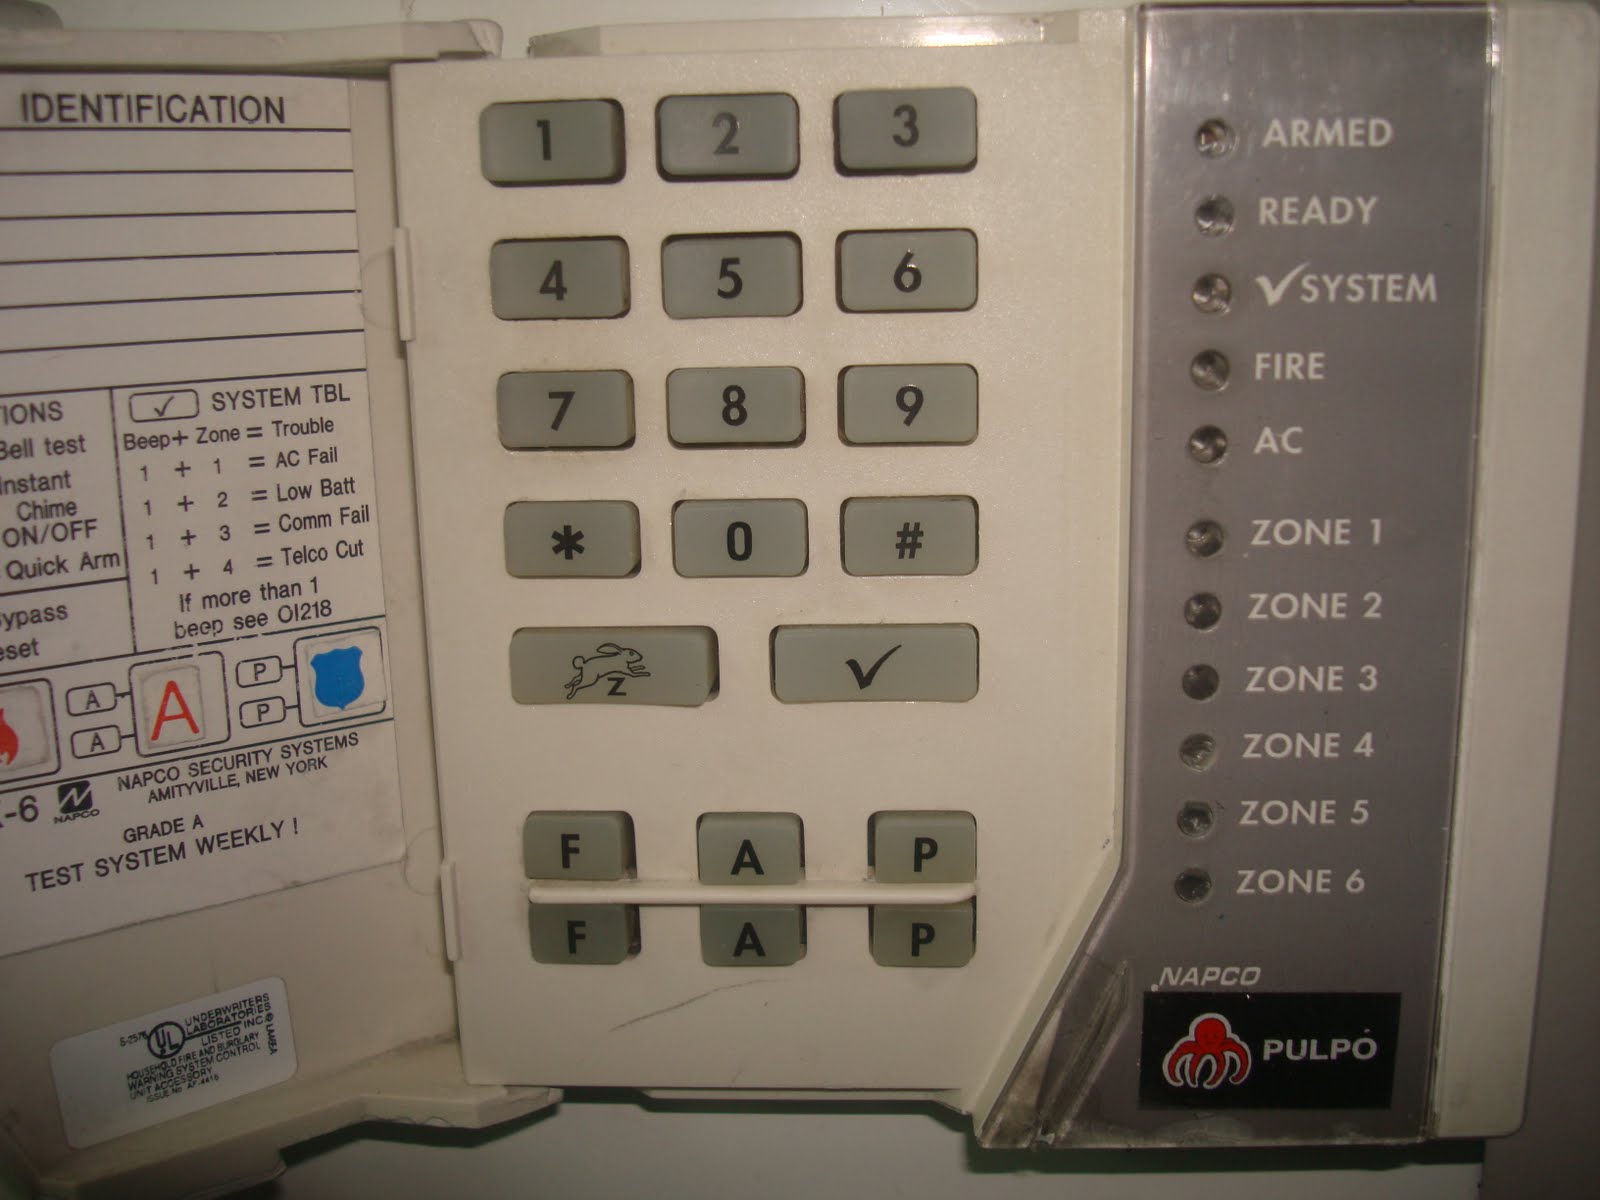 equipos-y-marcas-de-alarmas-panel-napco-xp-600